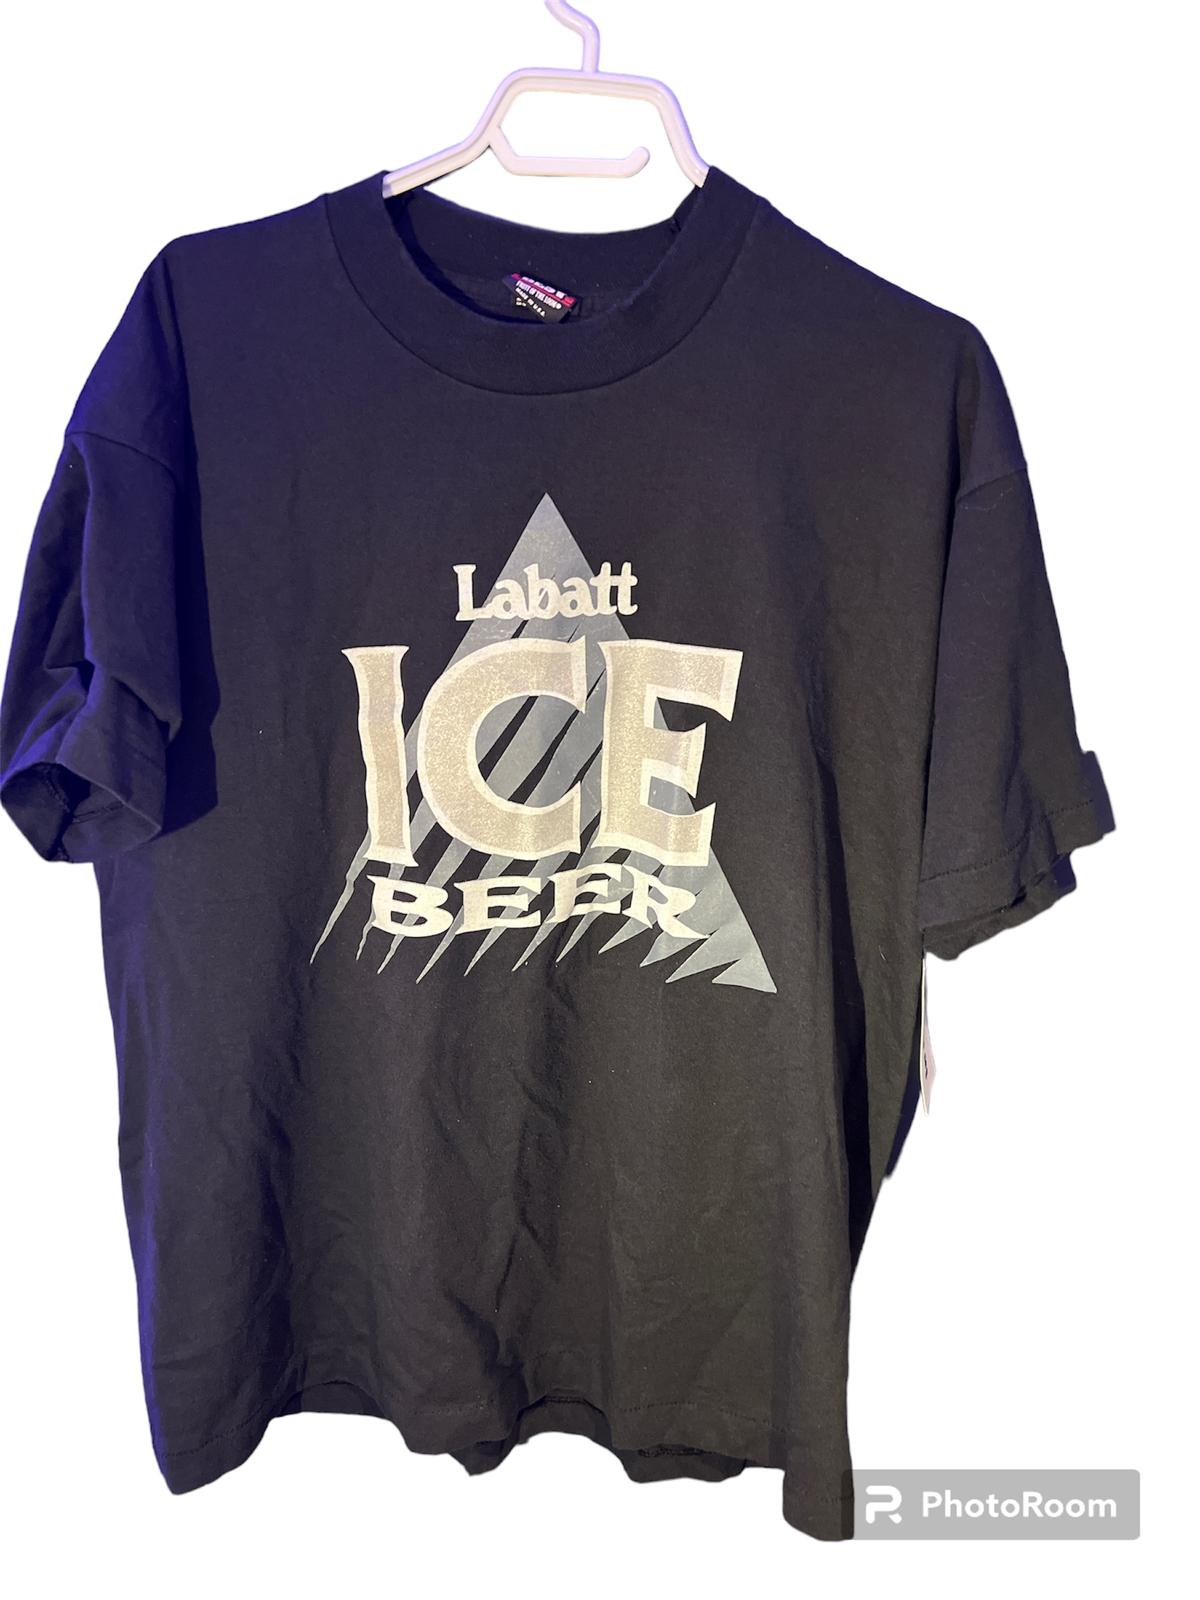 Photo of Labatt ice beer t-shirt 